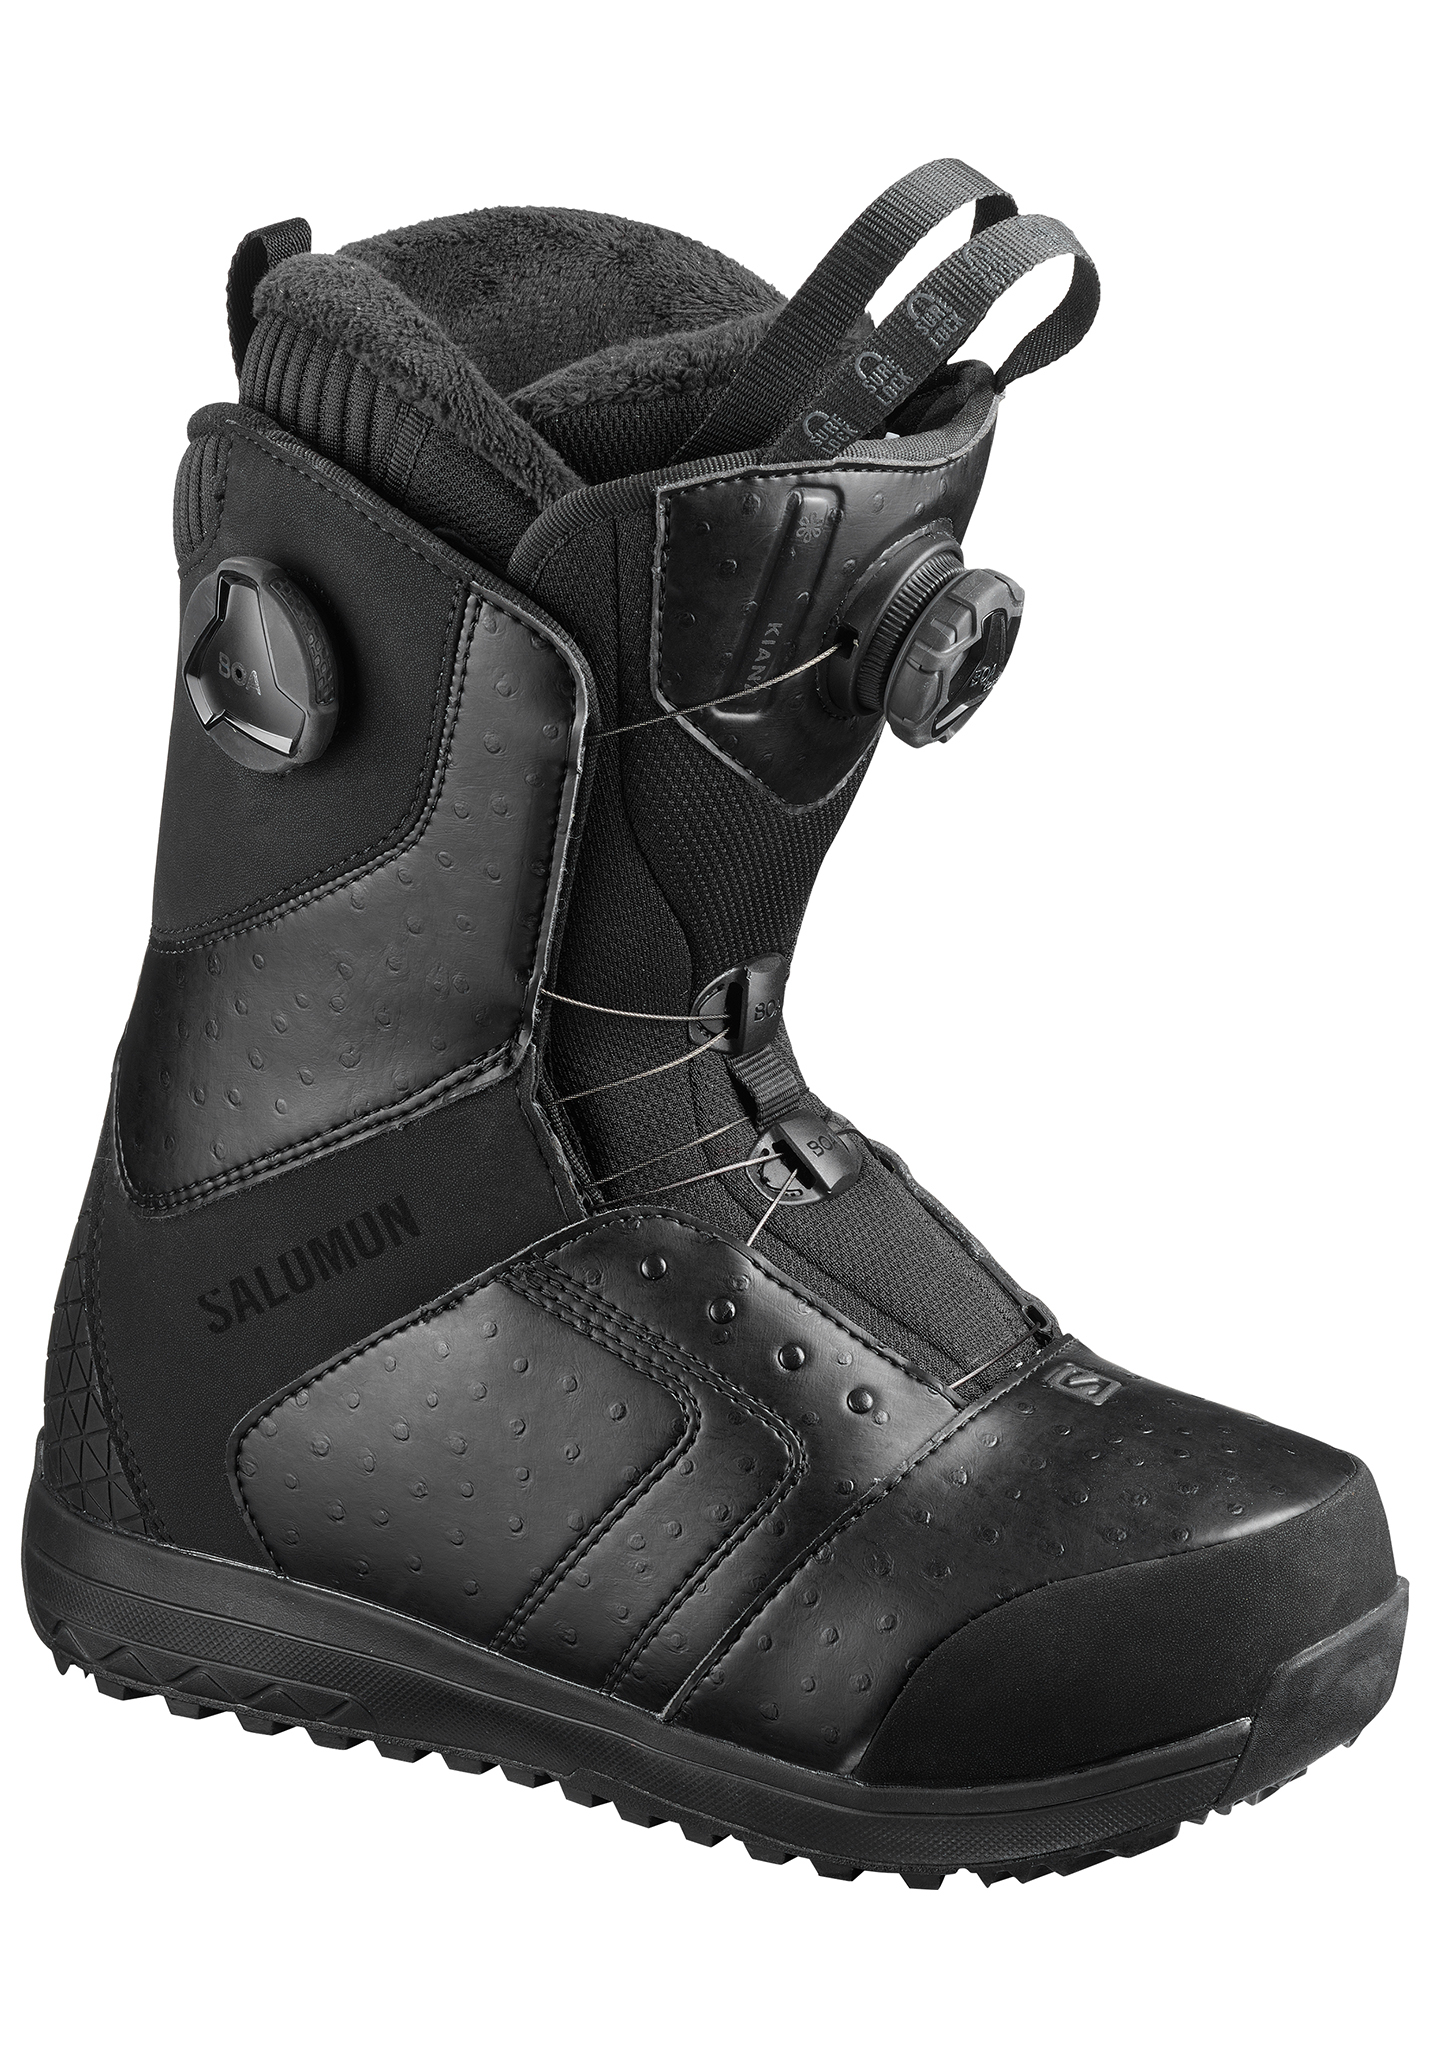 Salomon Kiana Focus Boa All Mountain Snowboard Boots schwarz/schwarz/schwarz 39